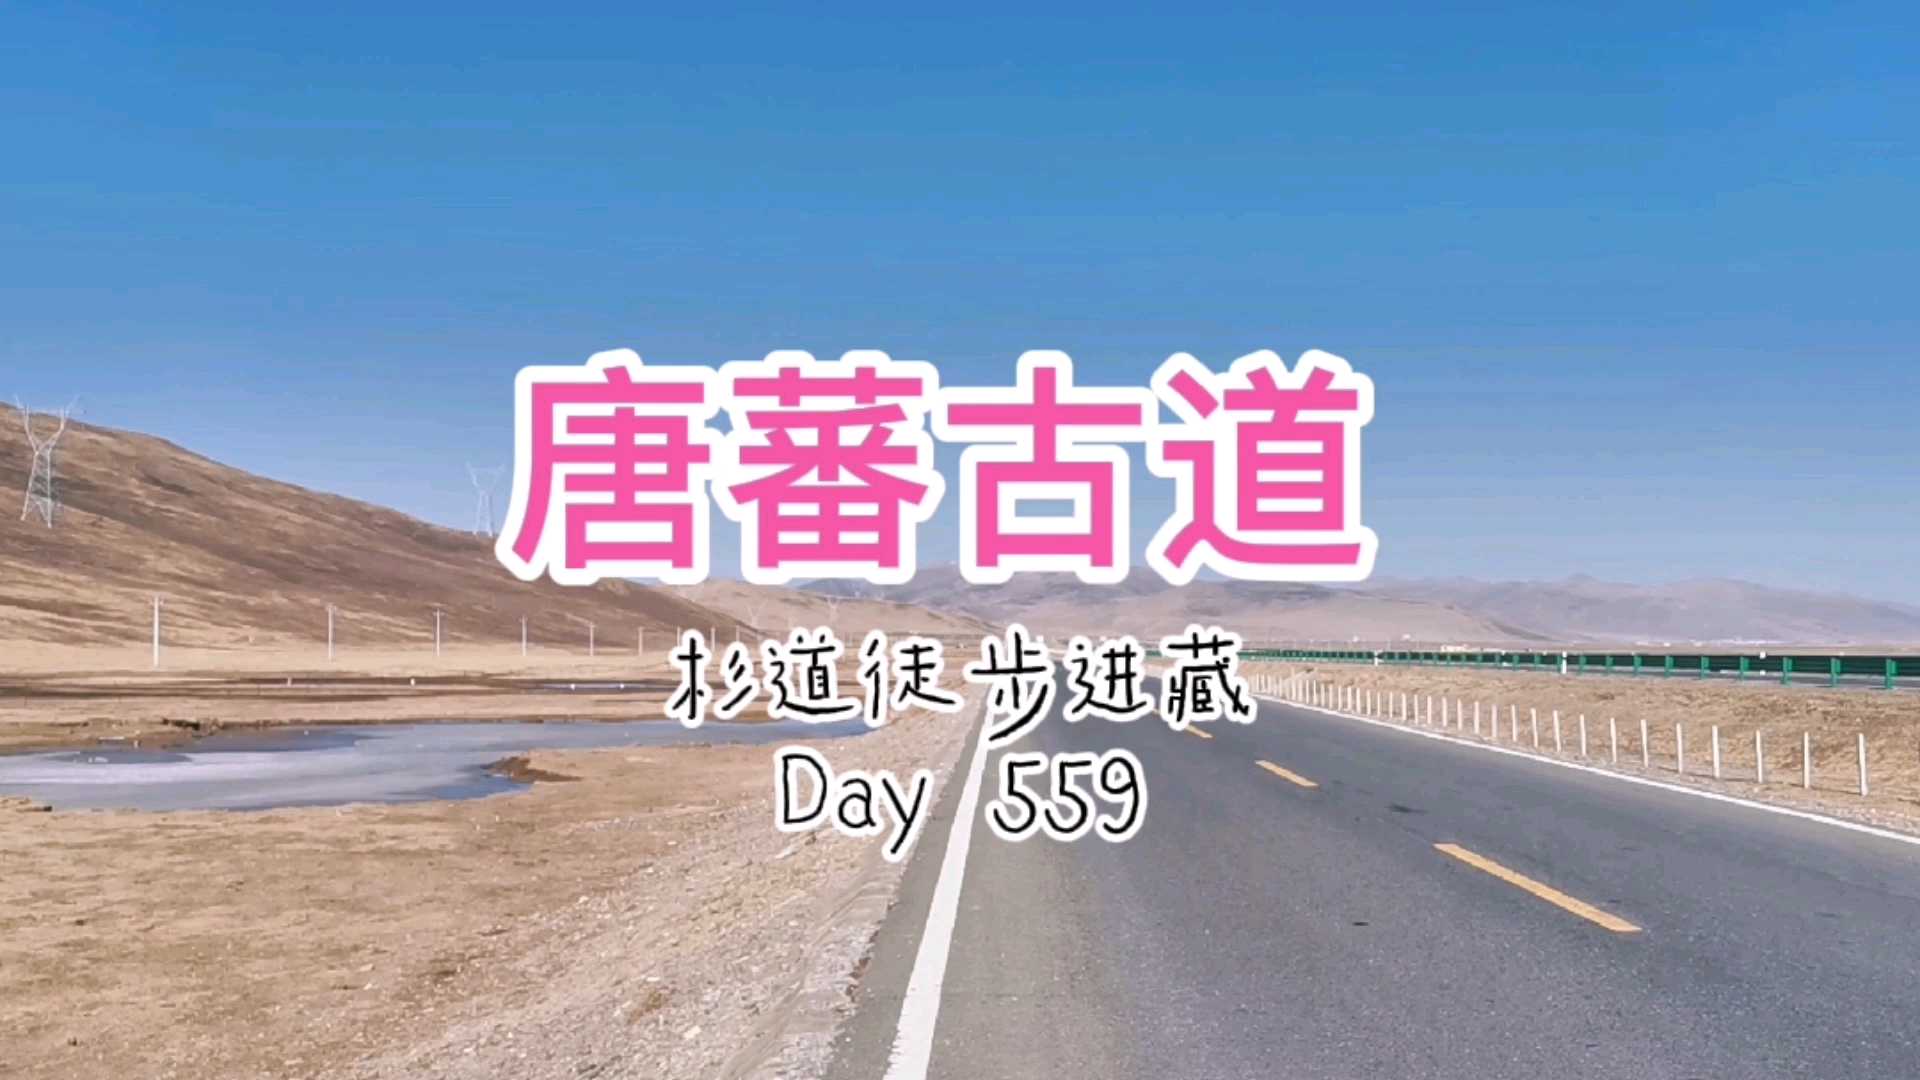 徒步进藏·唐蕃古道·Day559